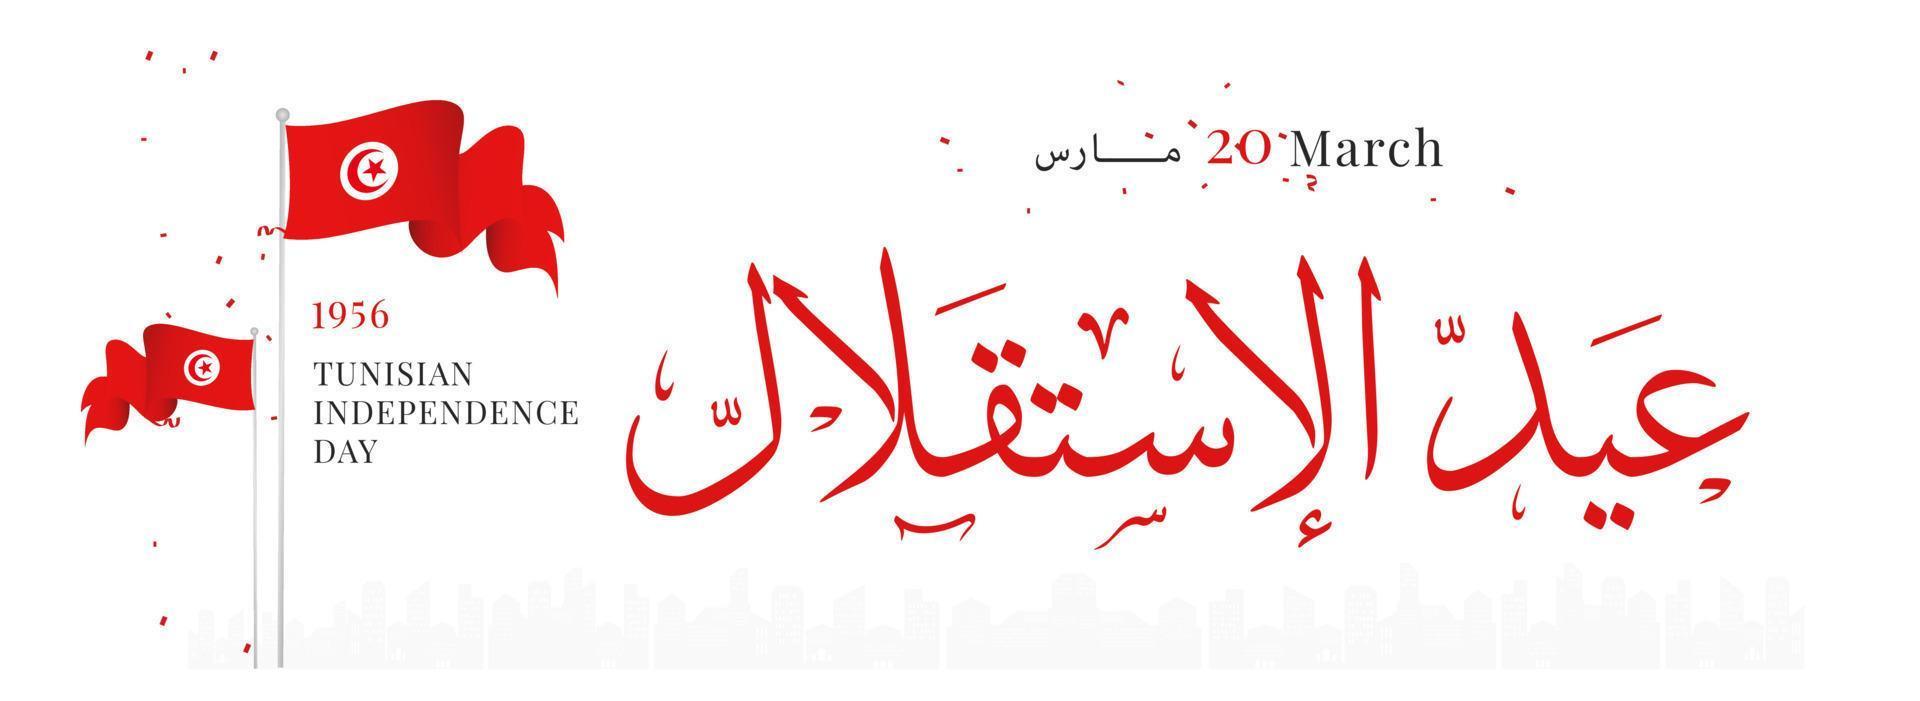 célébration de la fête de l'indépendance de la tunisie 20 mars illustration vectorielle vecteur